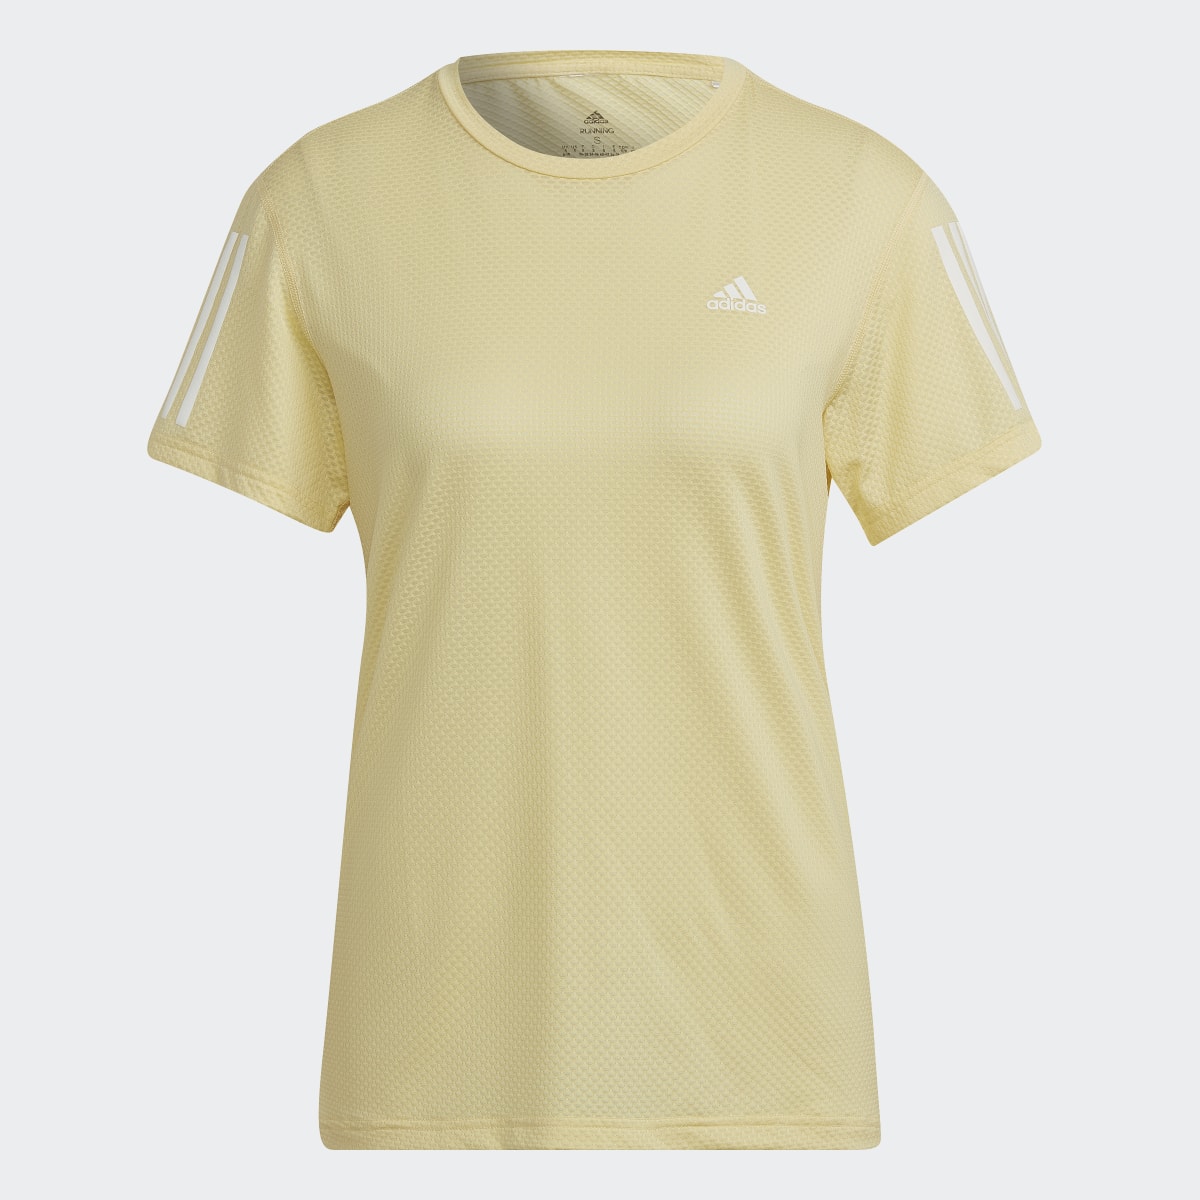 Adidas Own the Run Cooler T-Shirt. 5